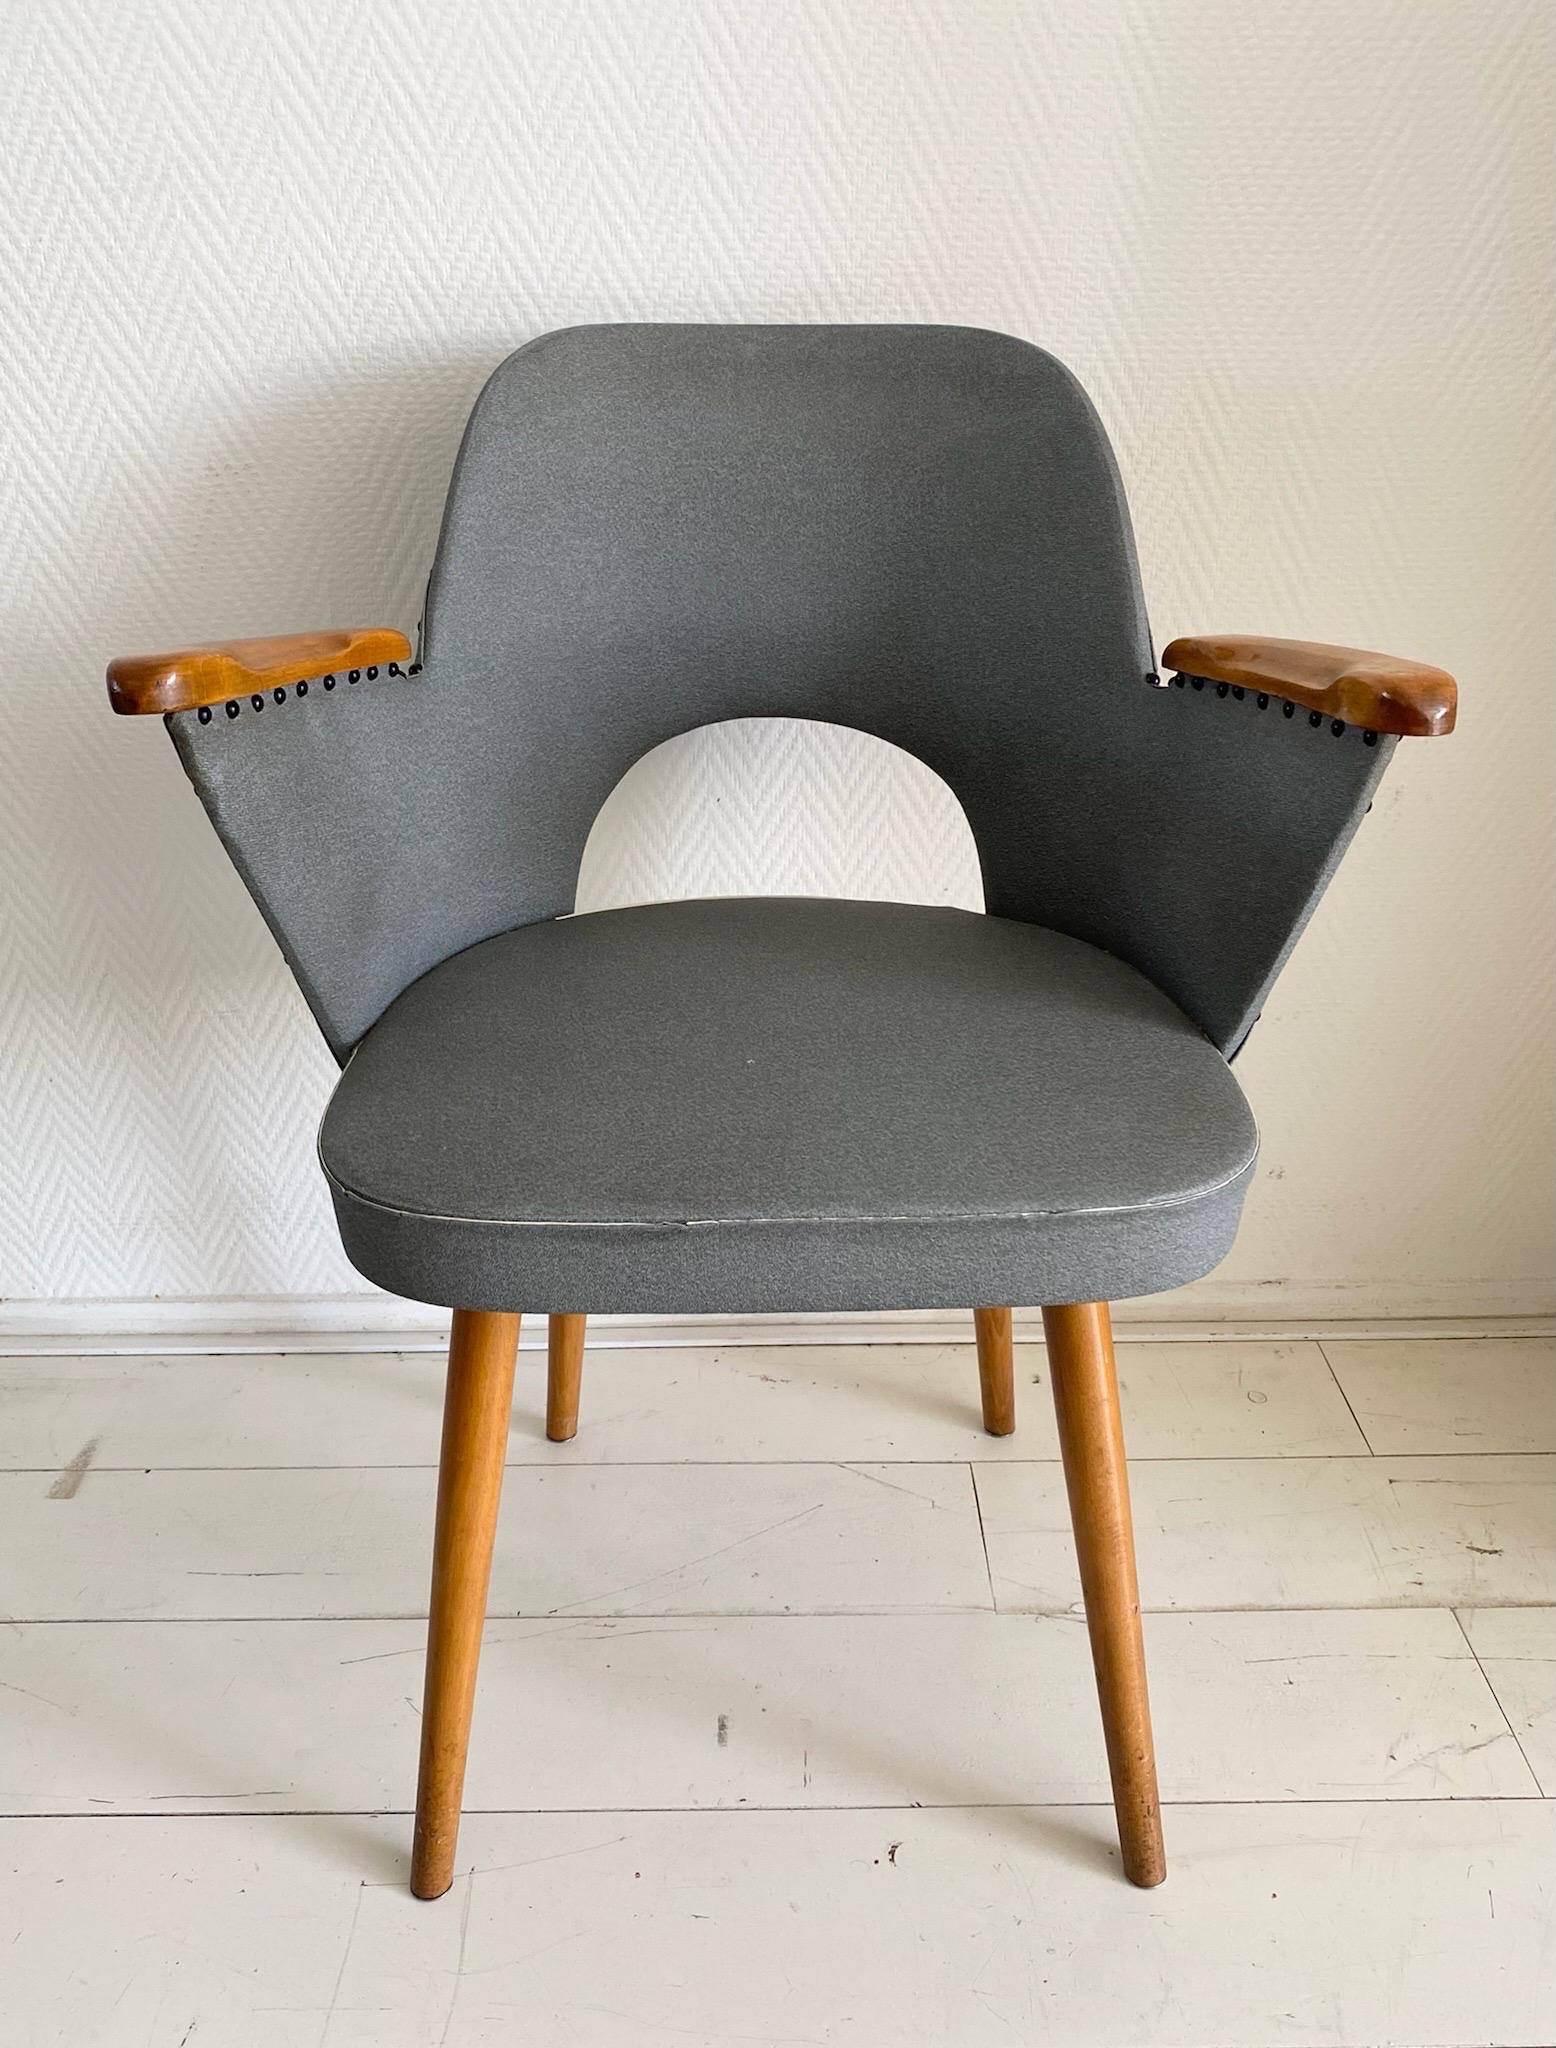 Schöner Thonet Sessel, entworfen von dem Wiener Architekten und Designer Oswald Haerdtl. Der Stuhl hat Armlehnen und Beine aus Holz und ist mit blauem/grauem Kunstleder gepolstert.
Zweimal auf dem Boden gestempelt.

Der Stuhl befindet sich in einem